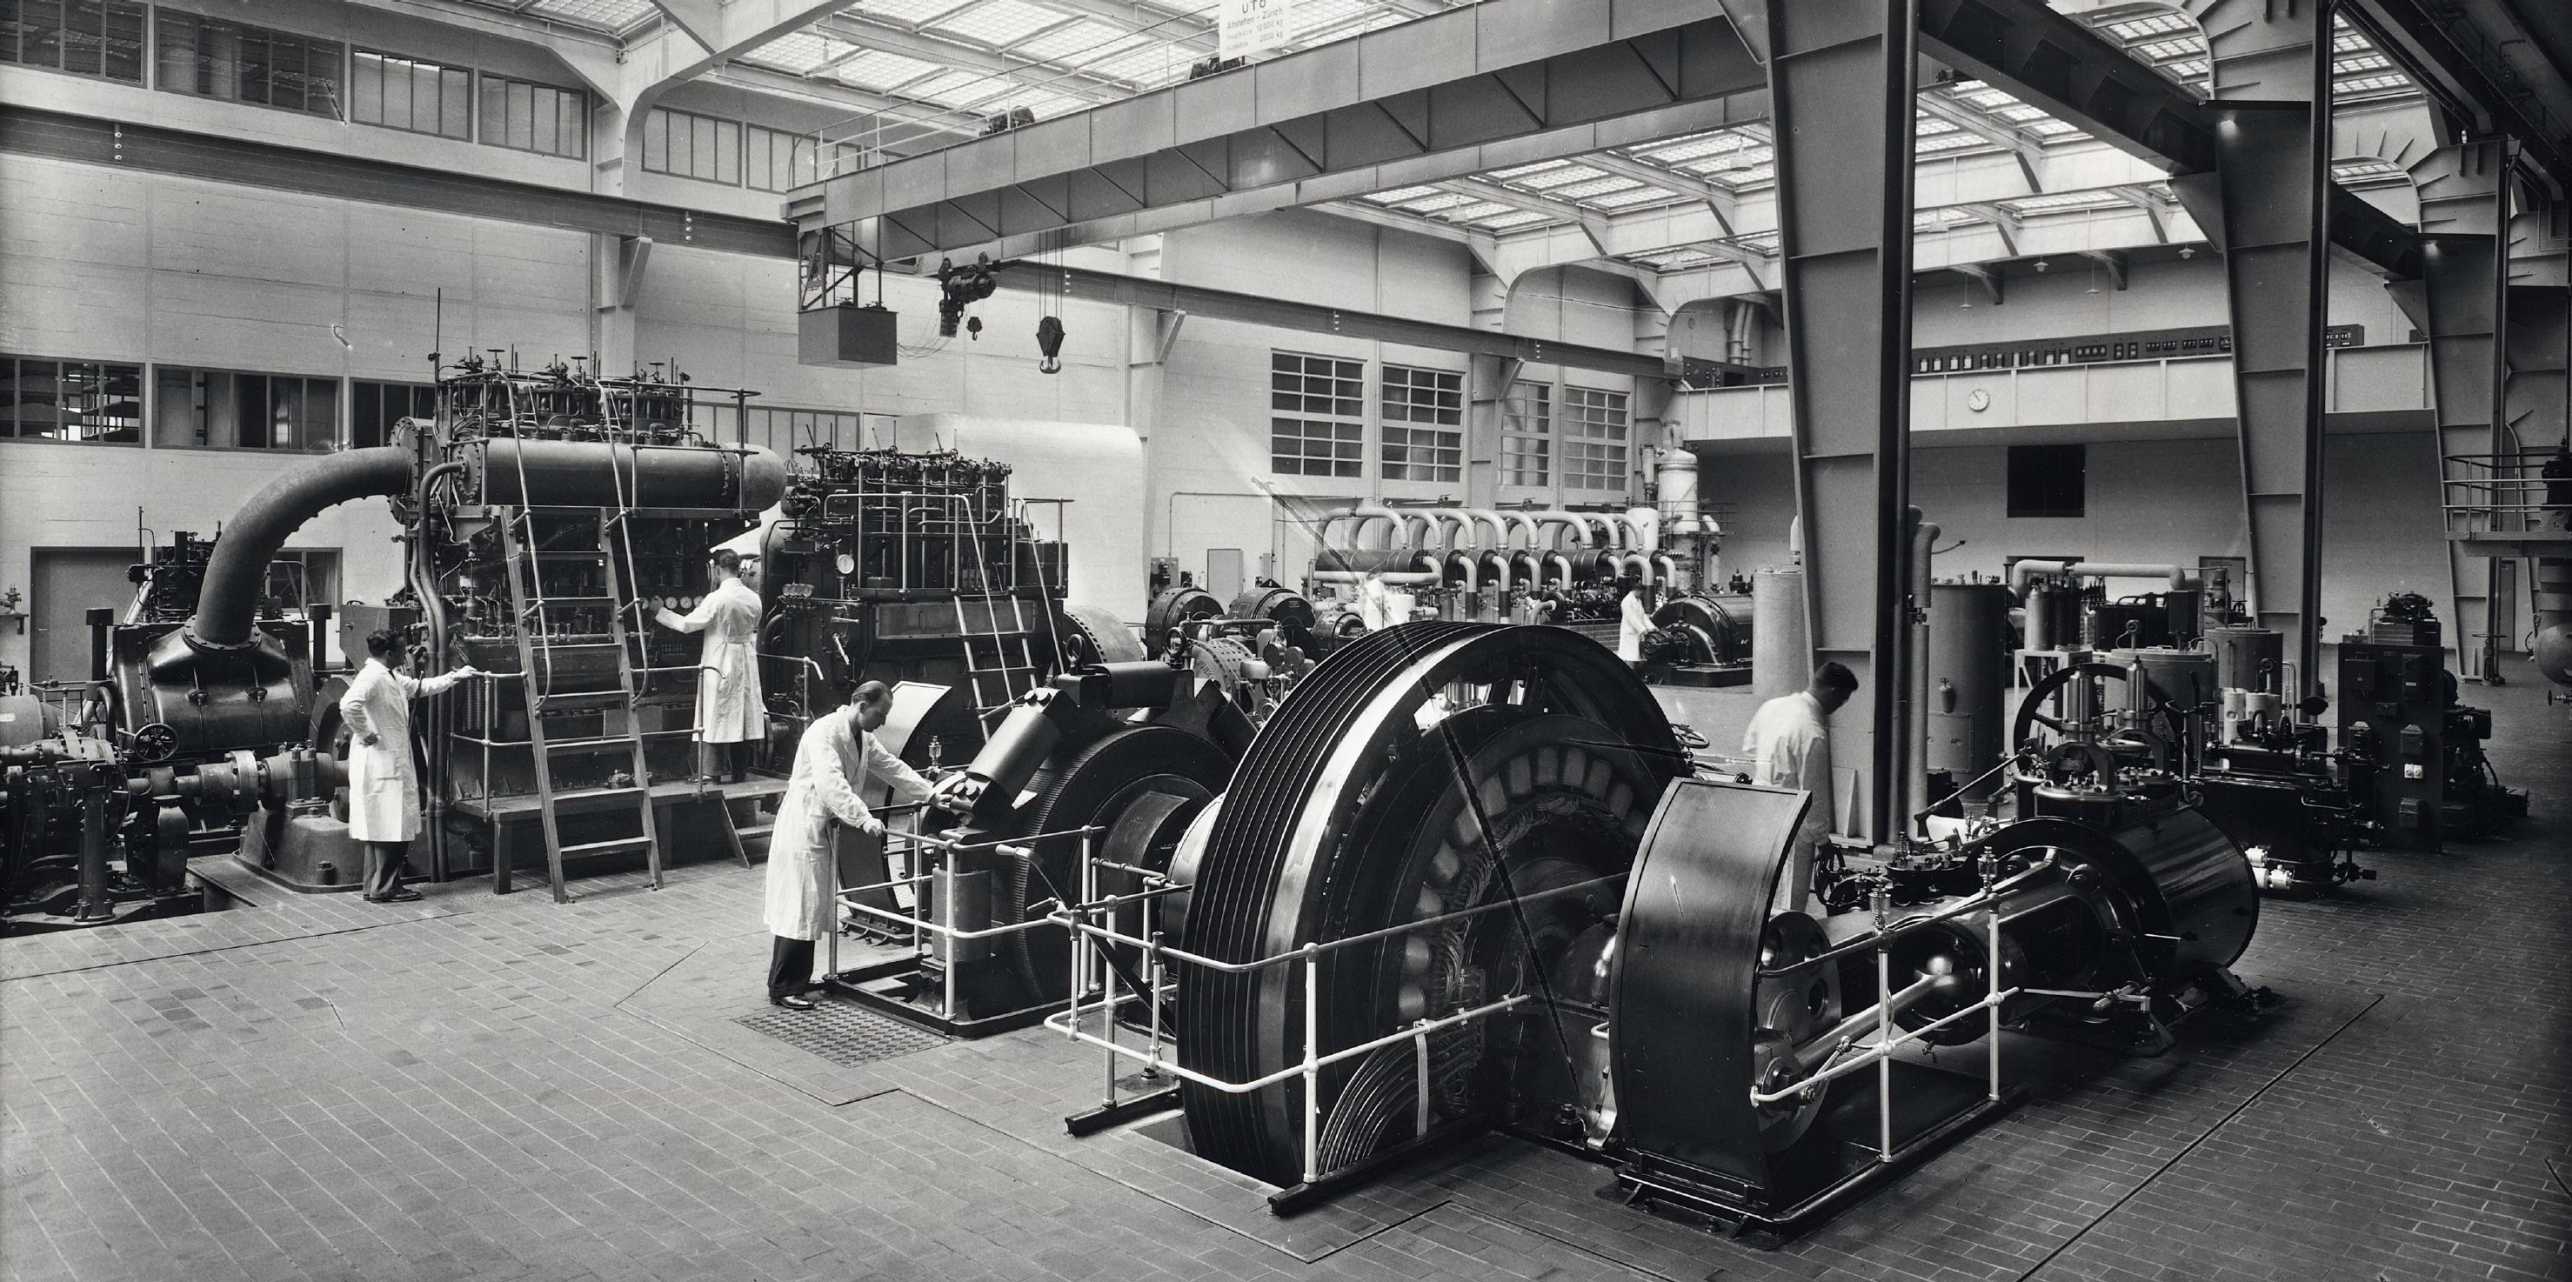 Altes schwarz weiss Bild einer Werkhalle, Personen beim Hantieren an den Maschinen.